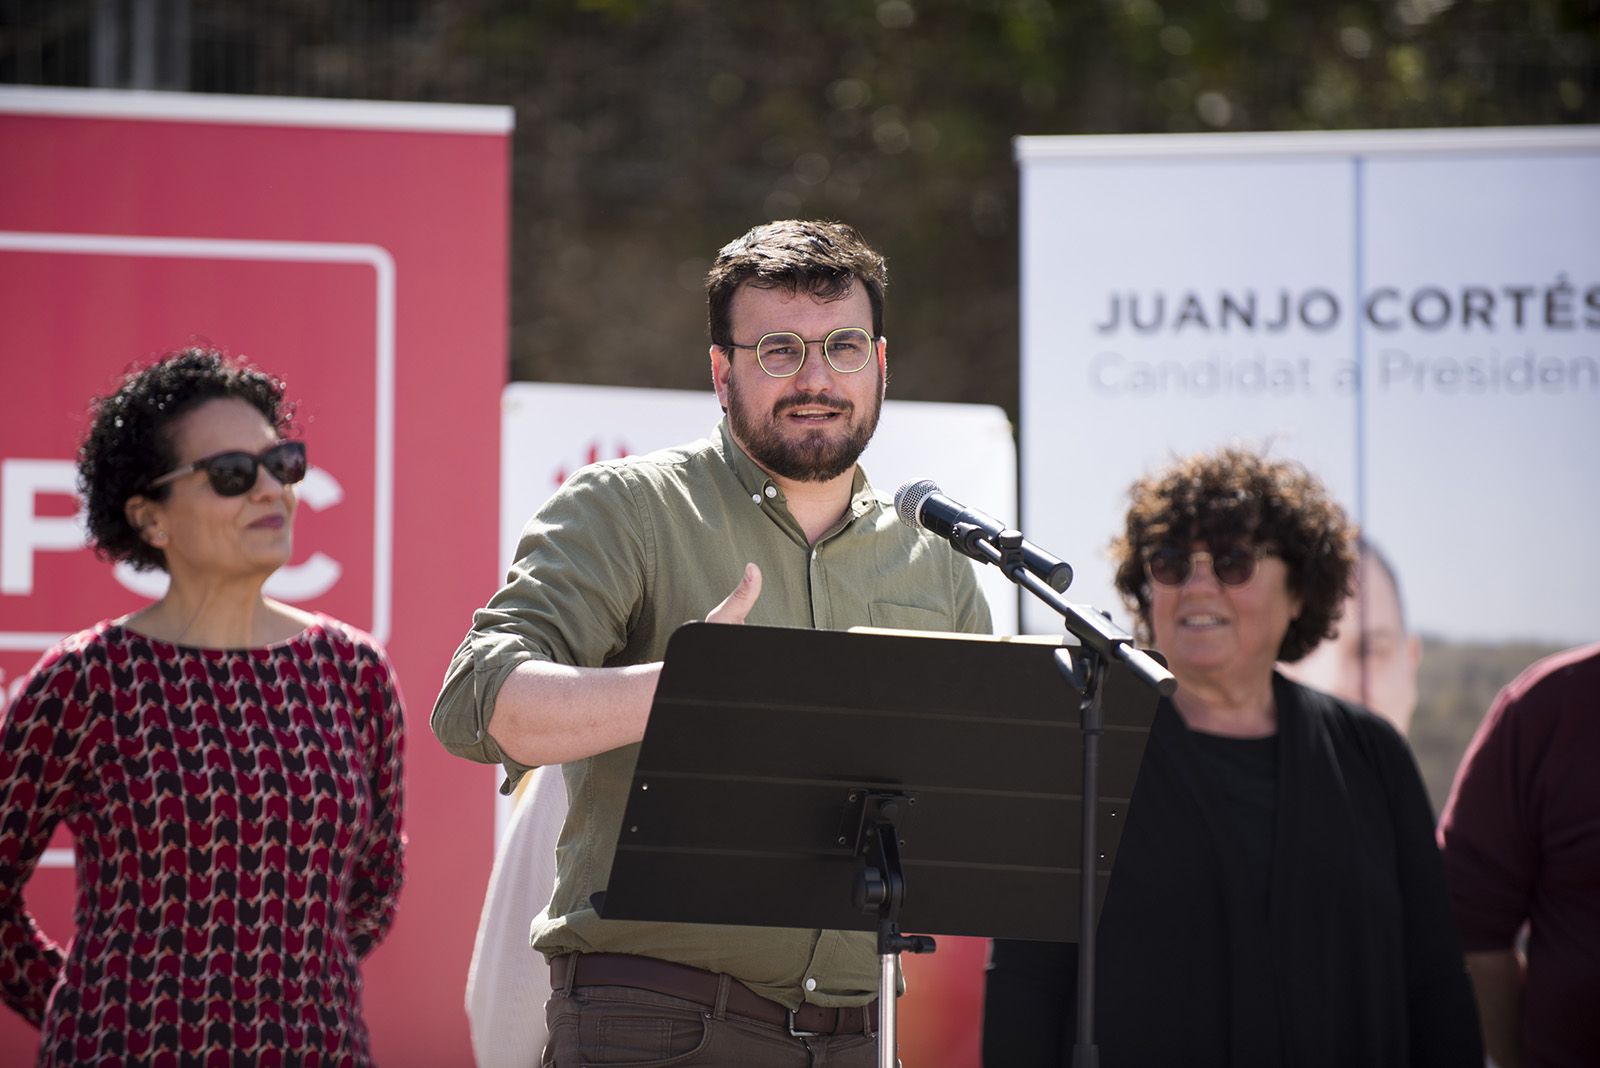 Presentació de Juanjo Cortés a Valldoreix. FOTO: Bernat Millet.